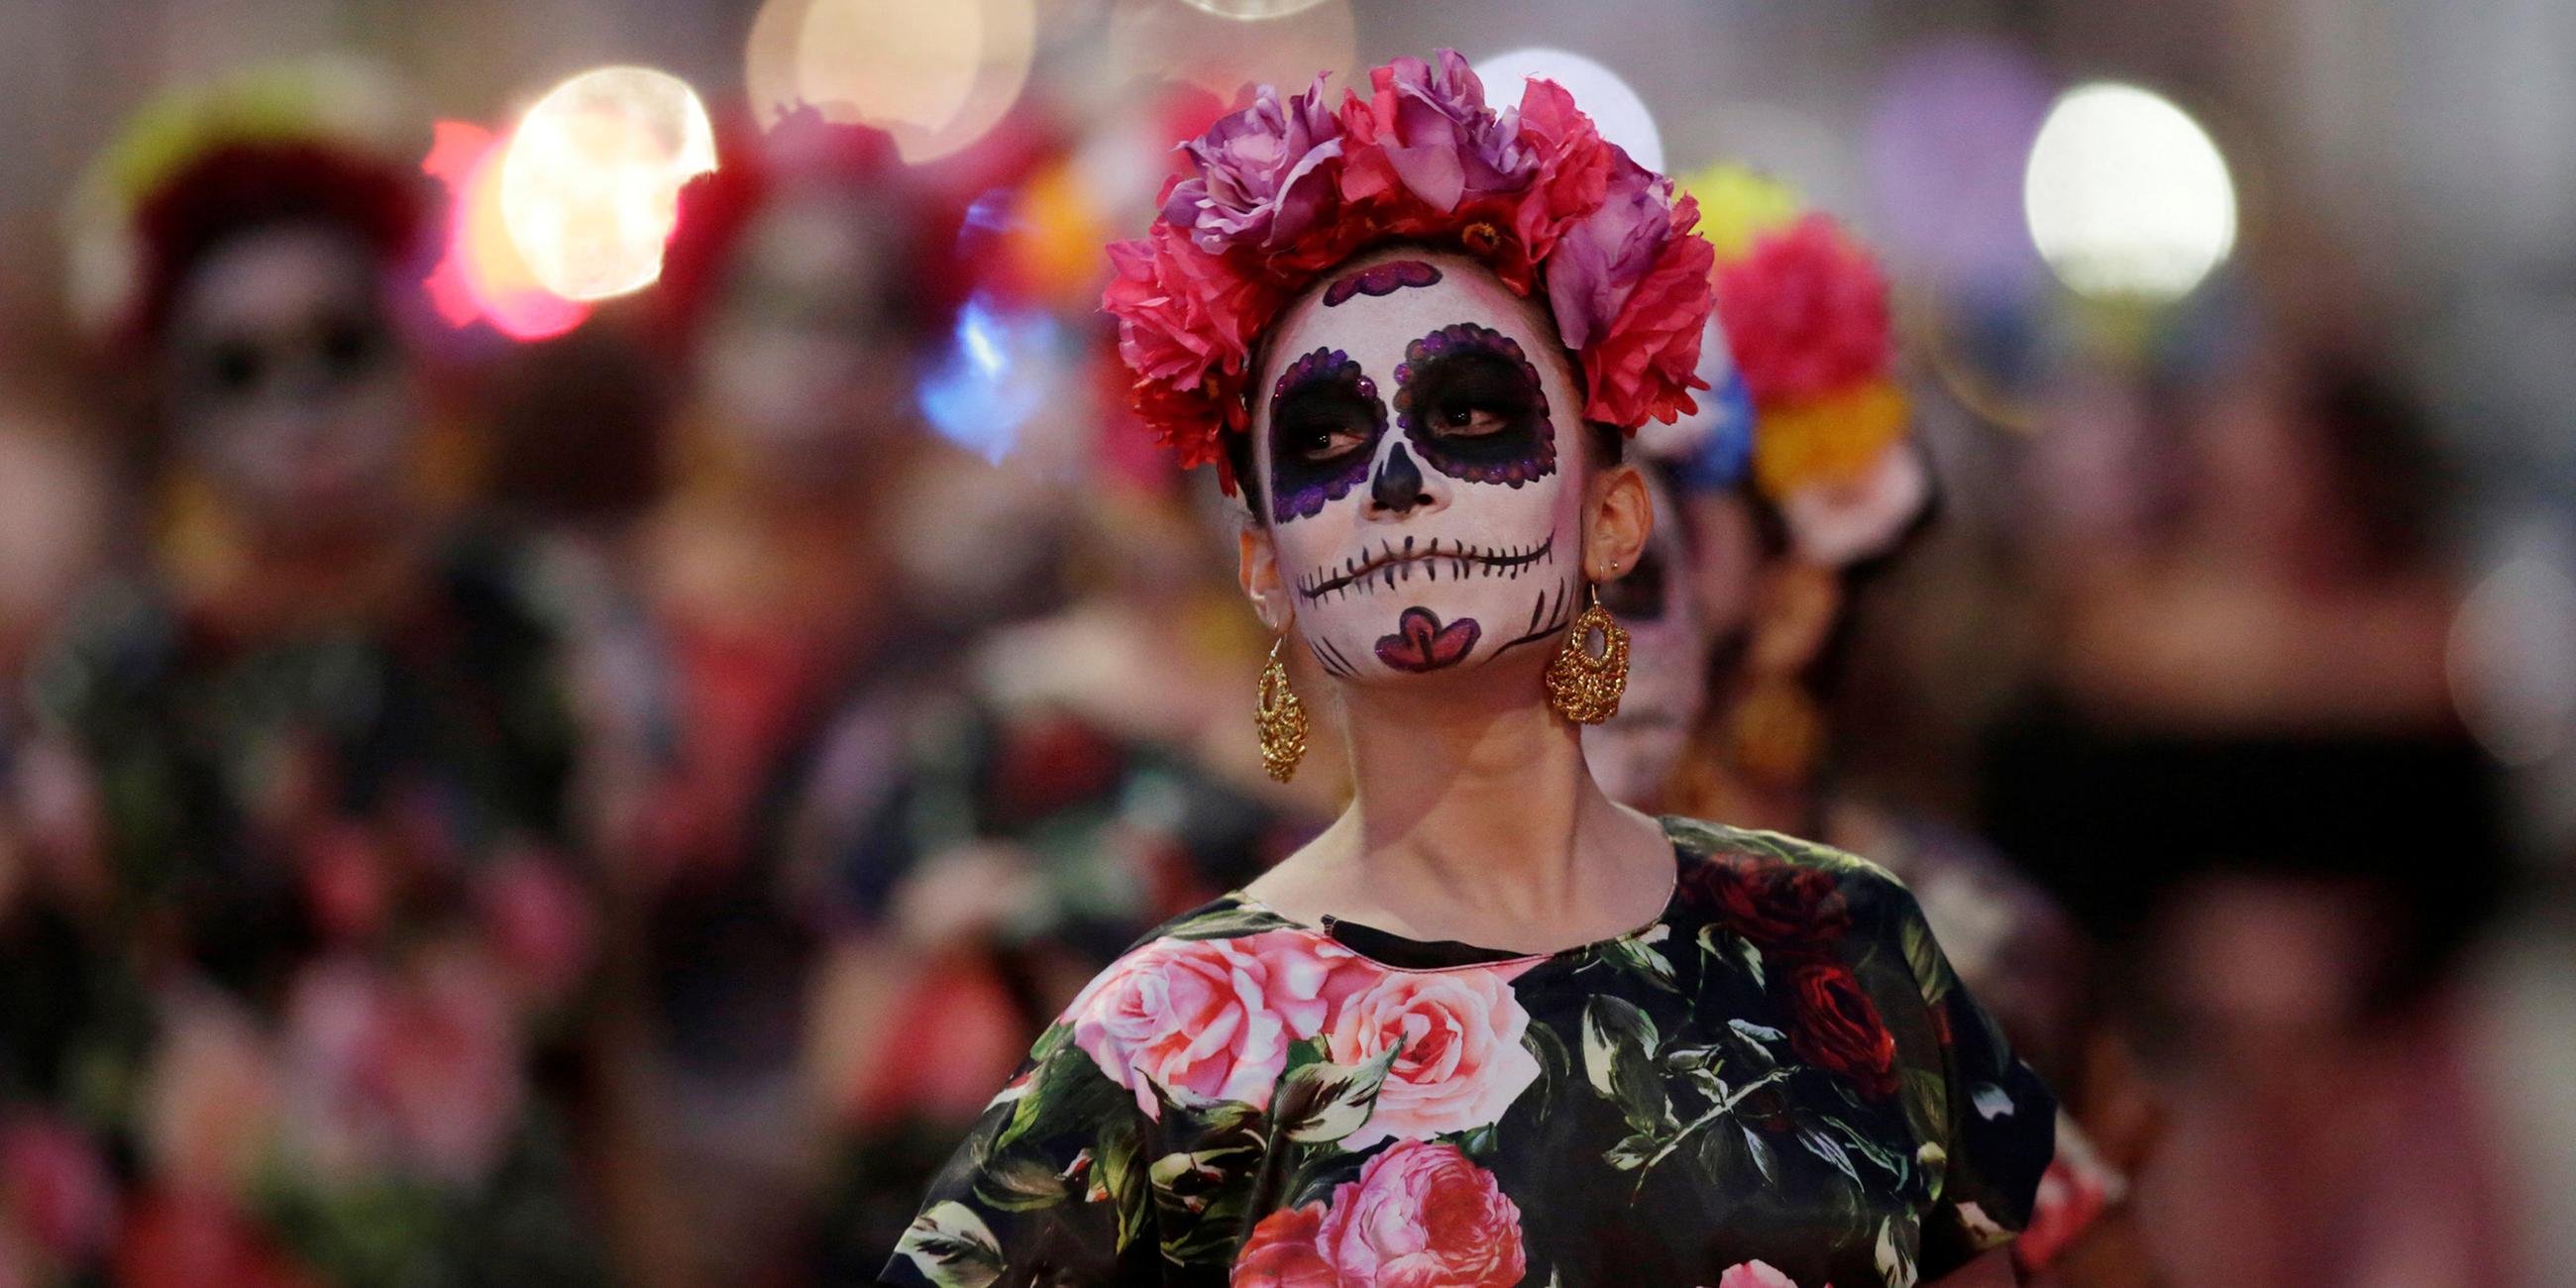 Totenkult in Mexiko